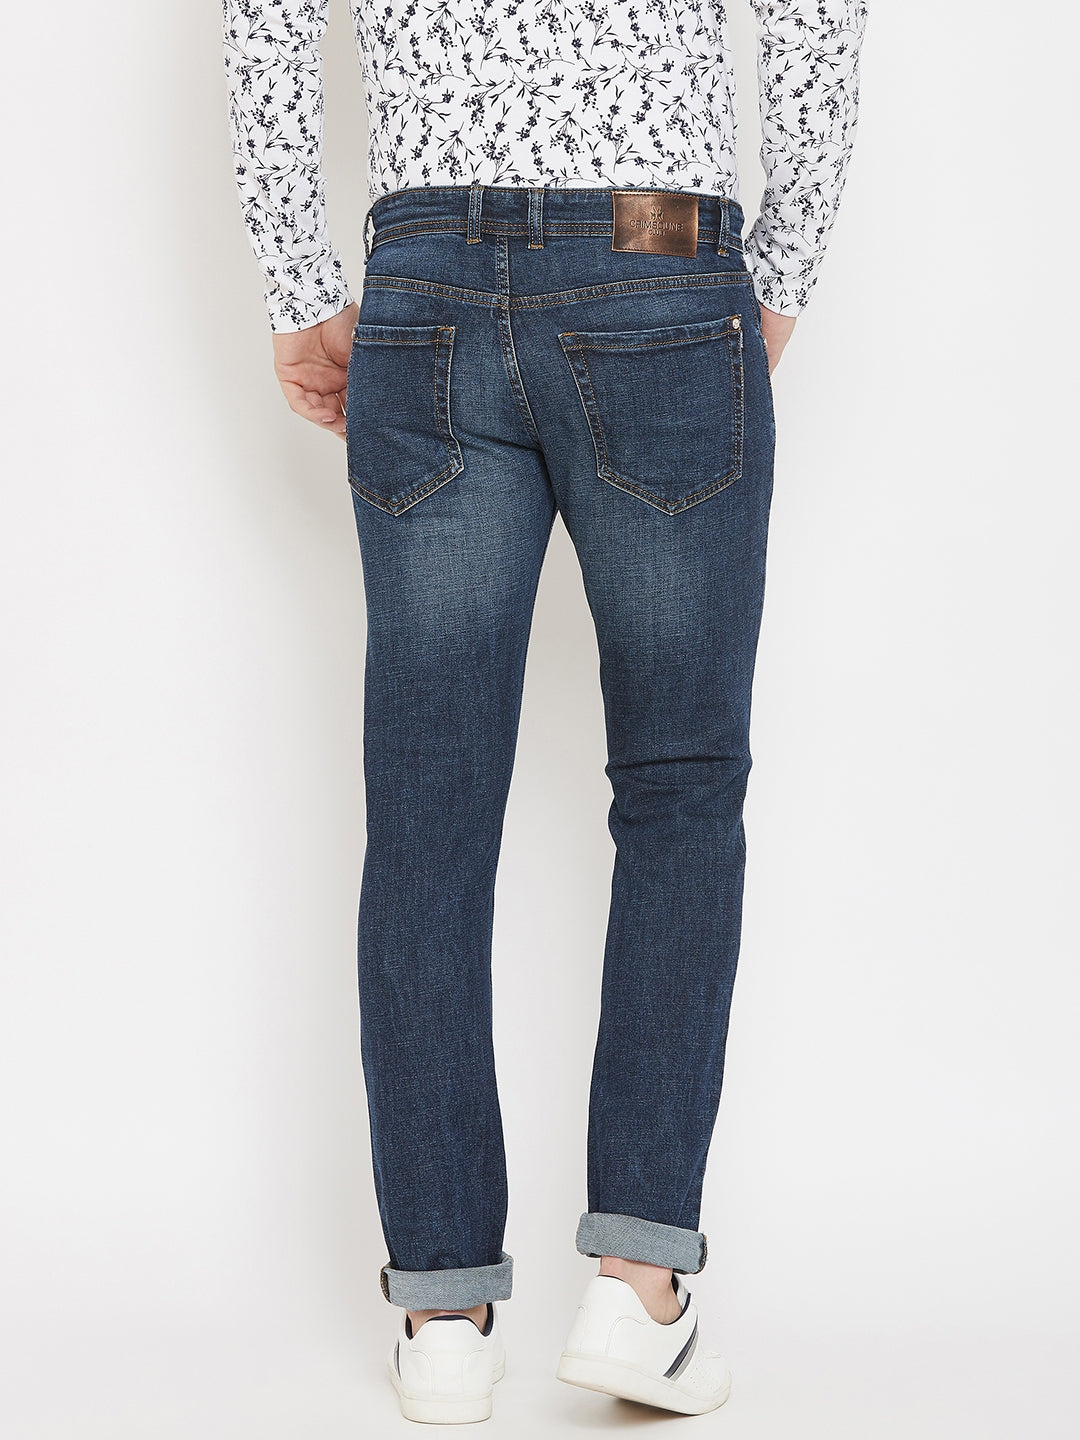 Blue Slim Fit Strechable Jeans - Men Jeans